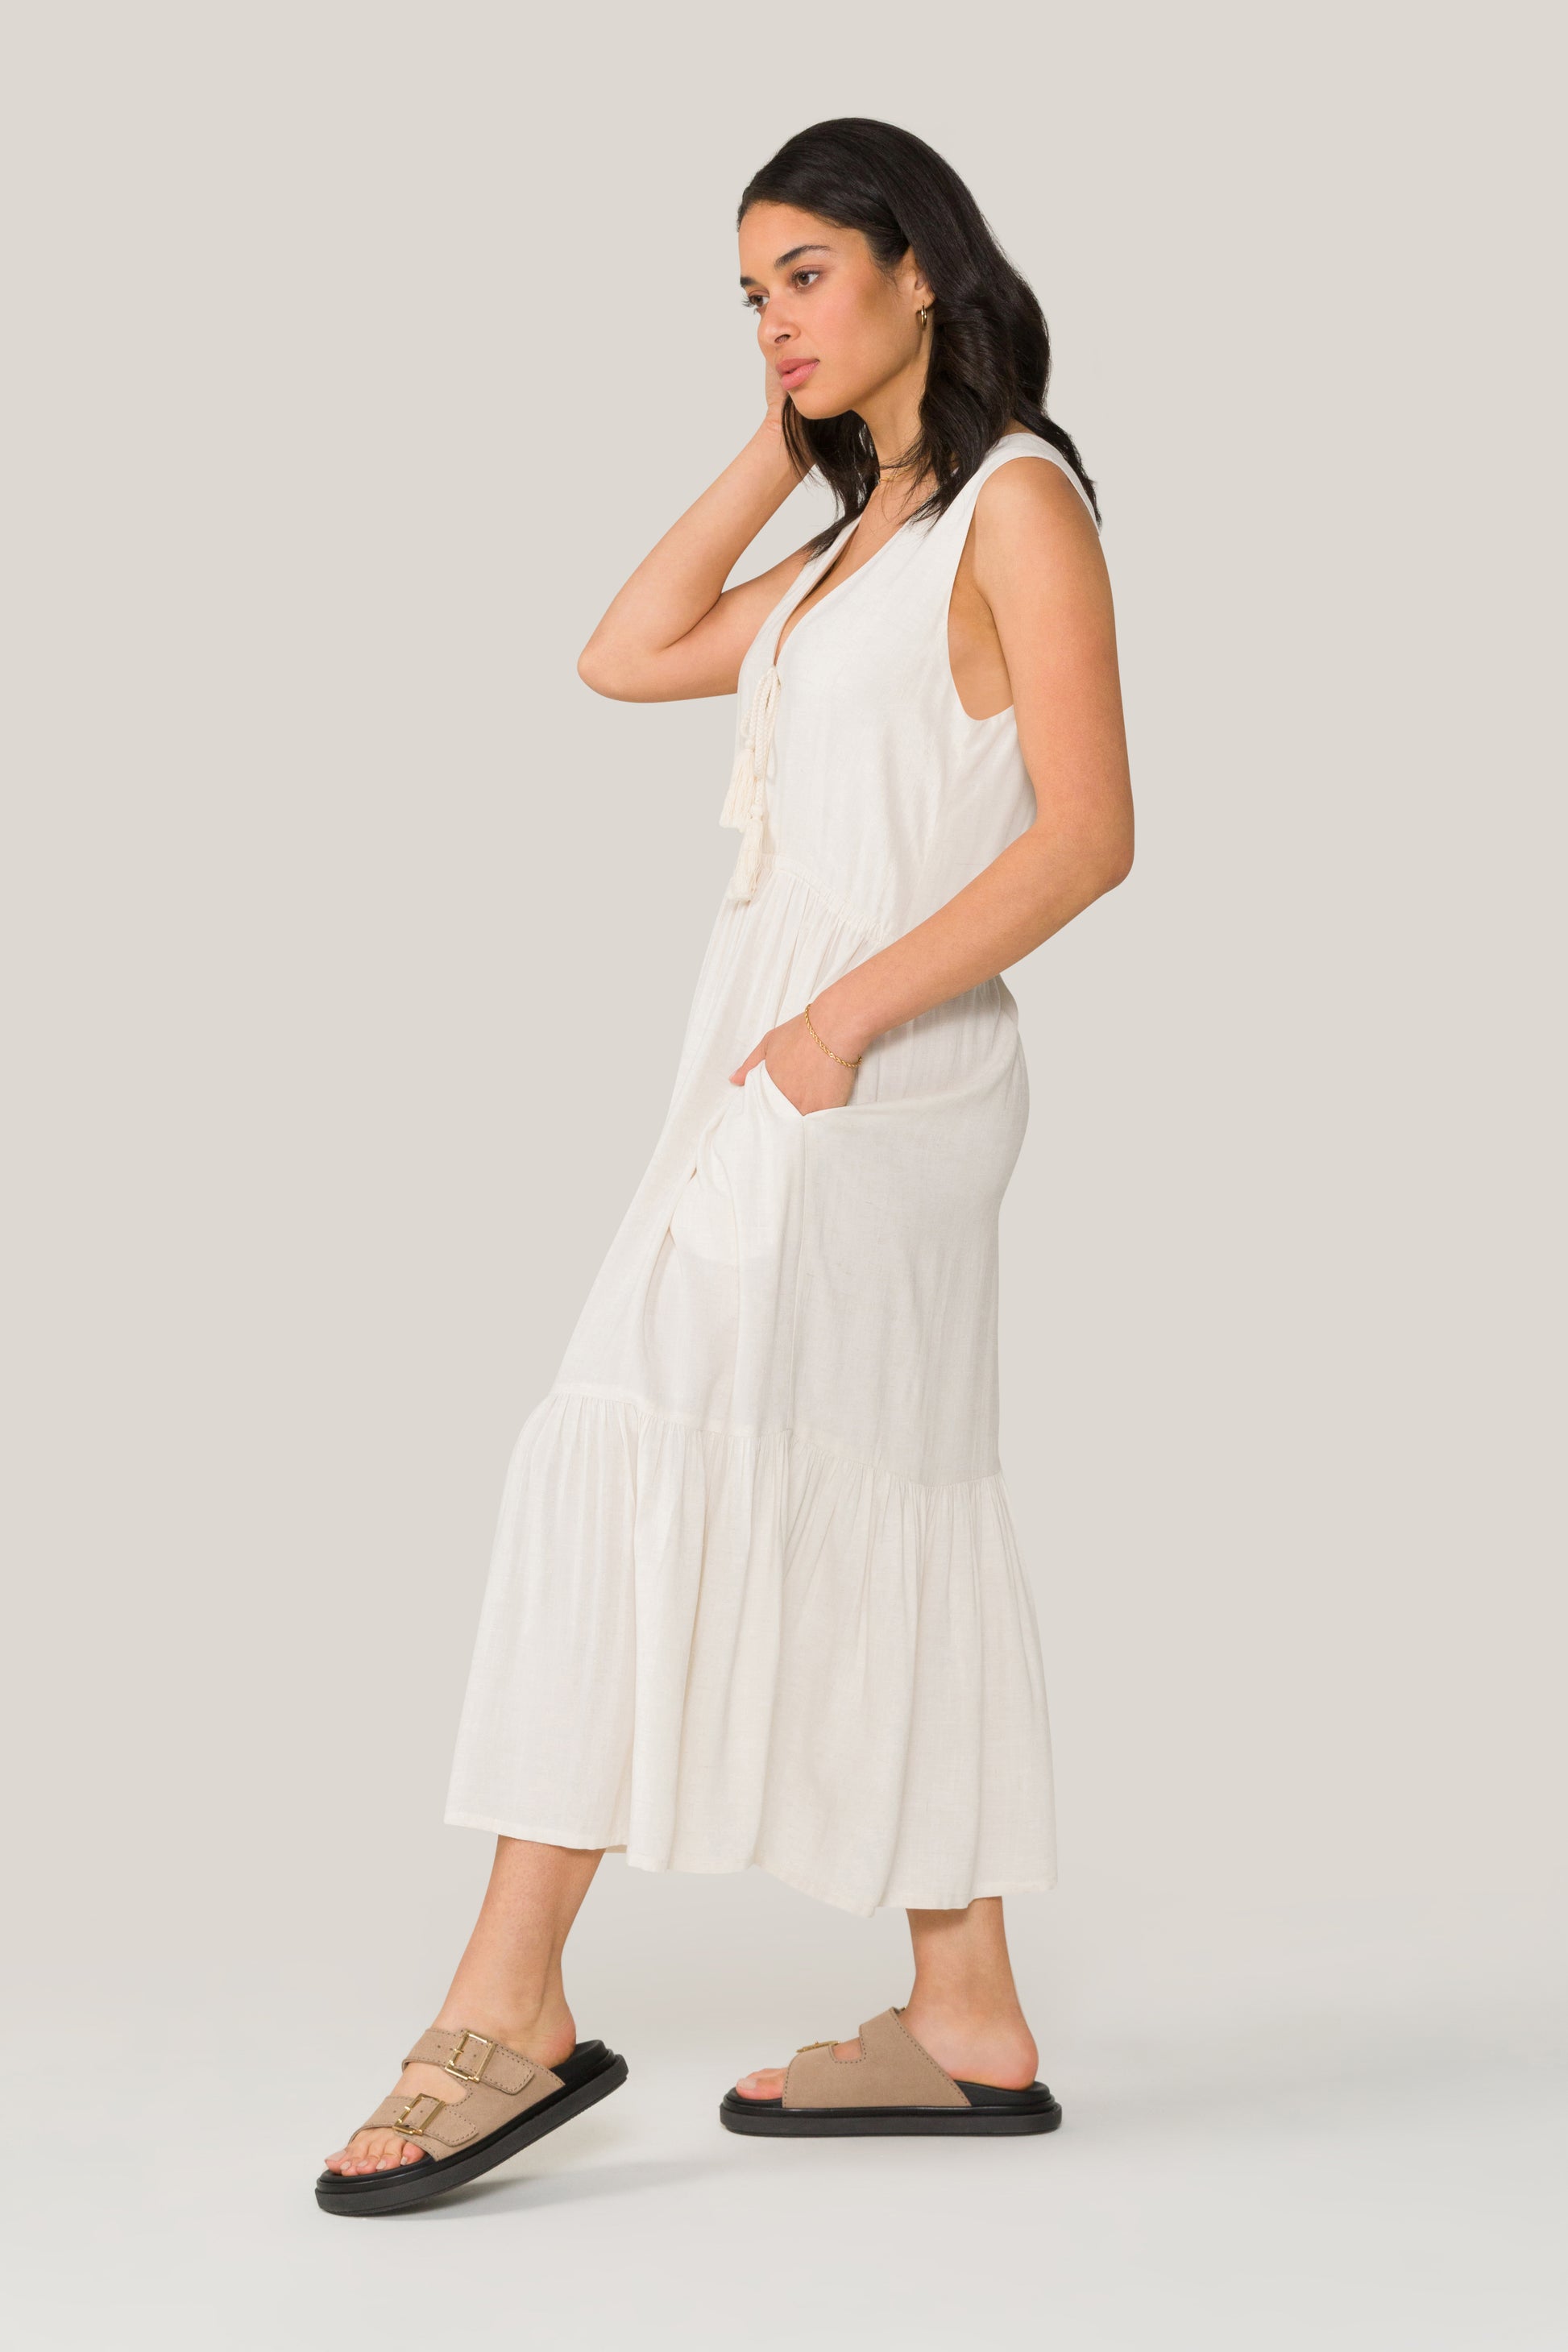 Alala women's linen blend maxi dress